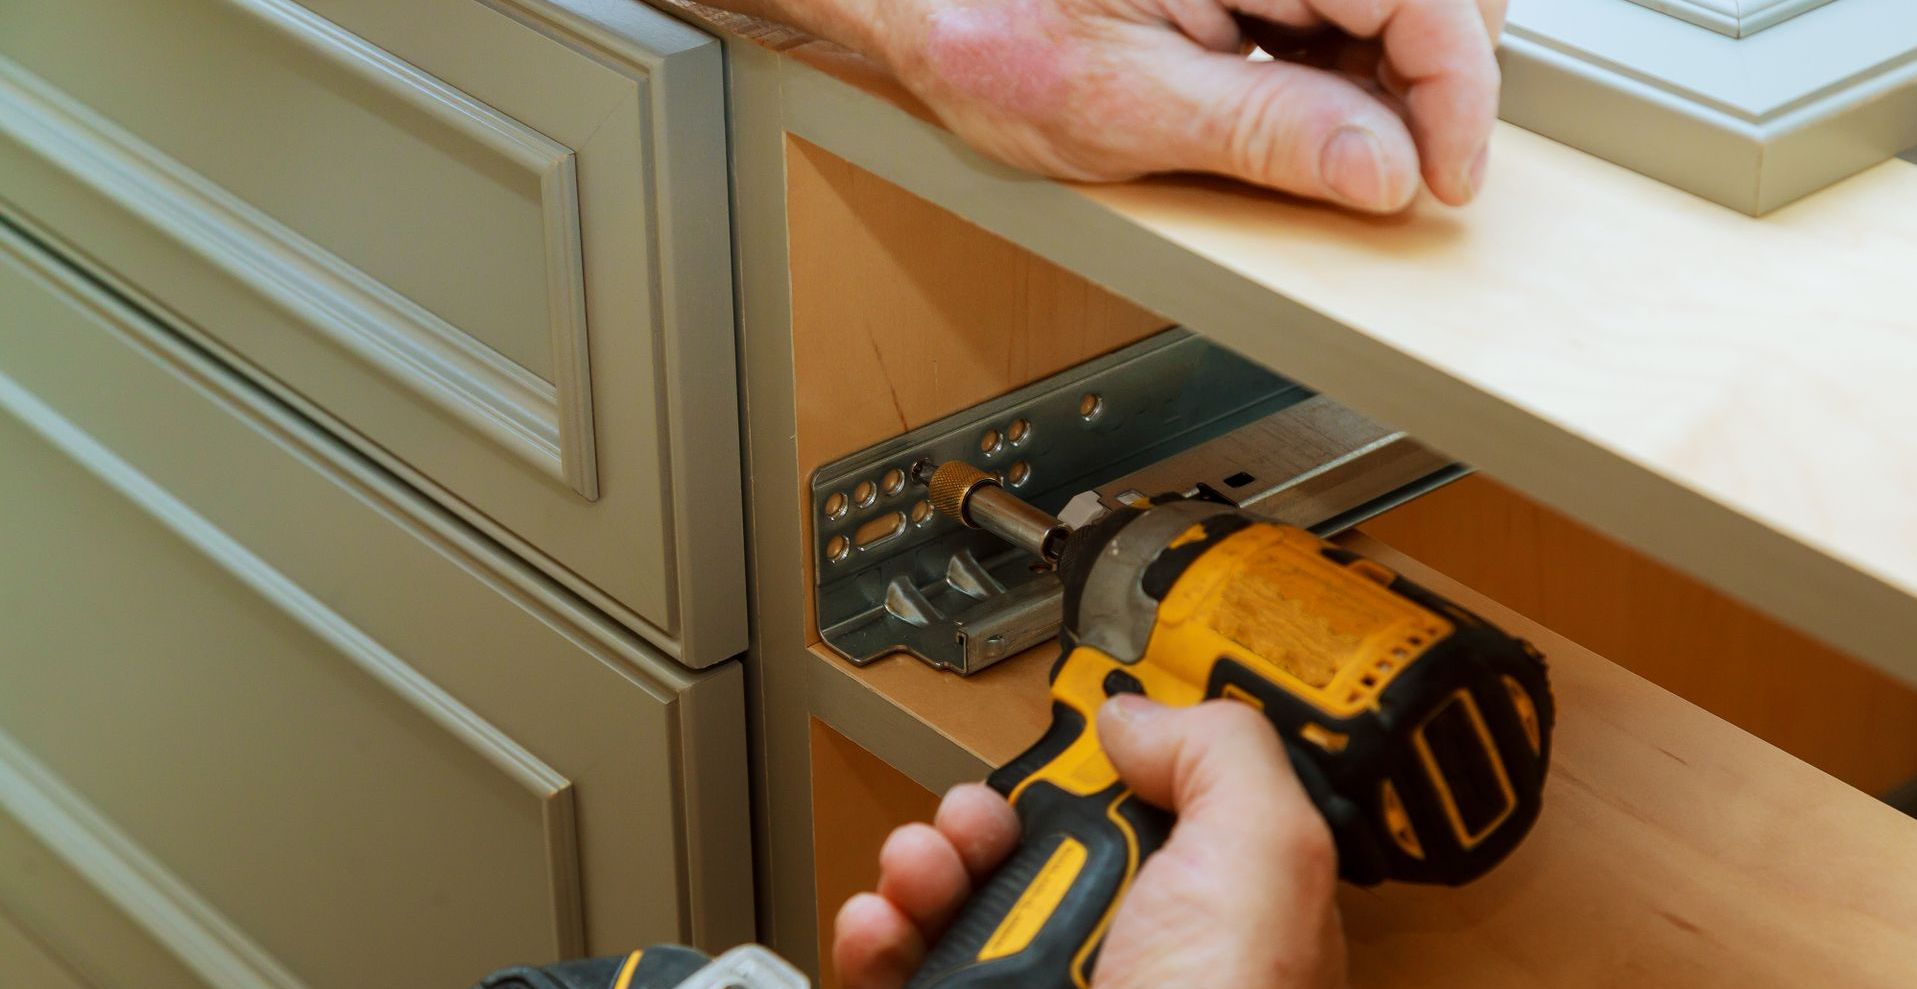 mister-remodel-carpentry-services-cabinetry-work-fastening-door-slide